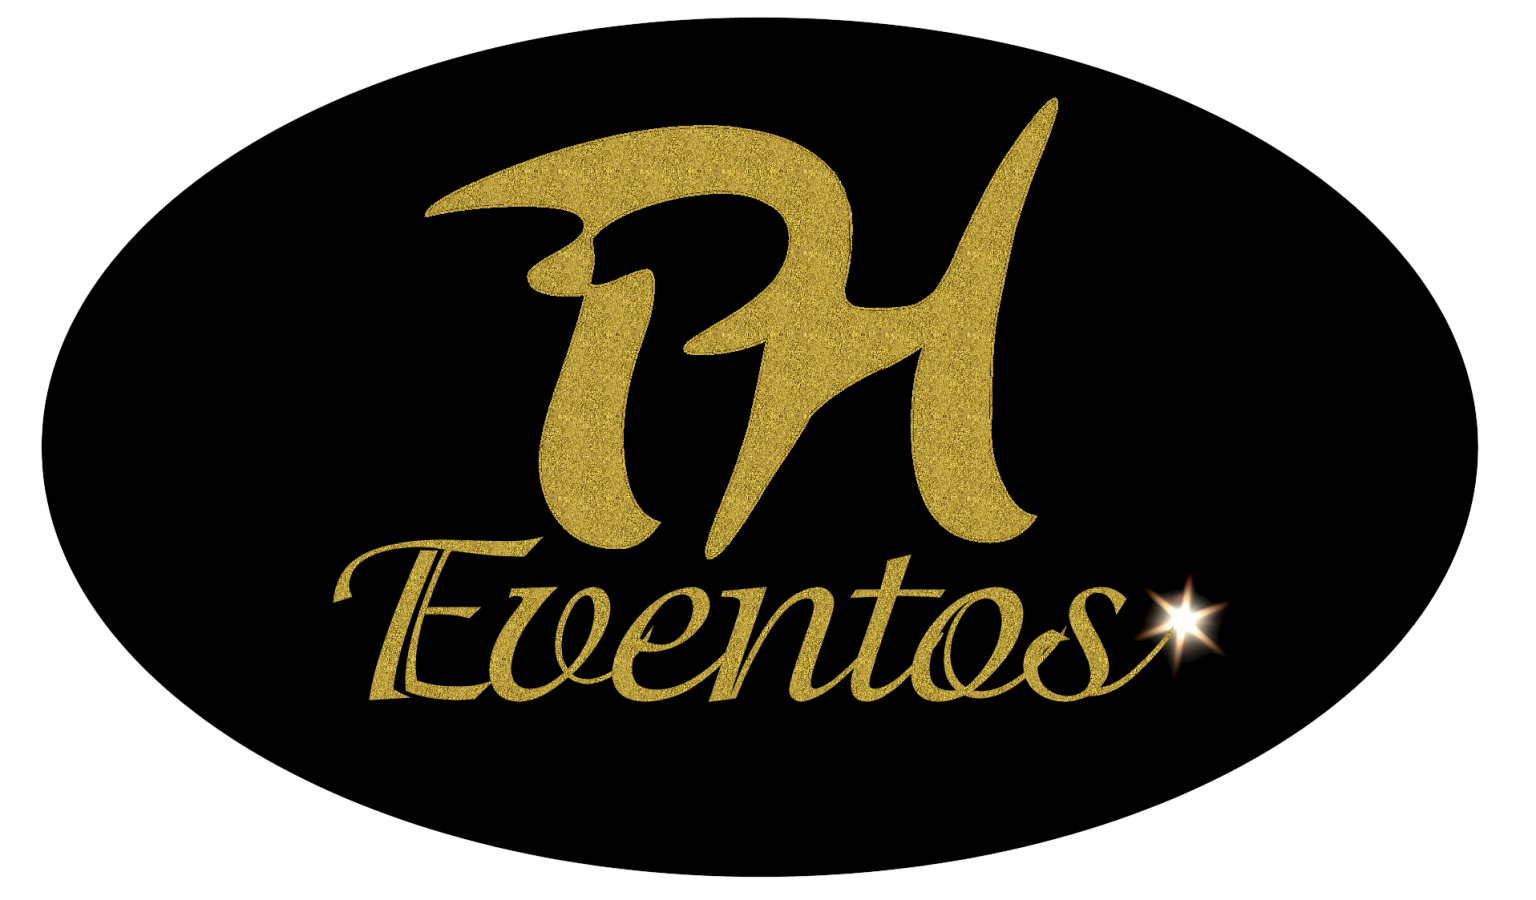 PH-EVENTOS-1536×900